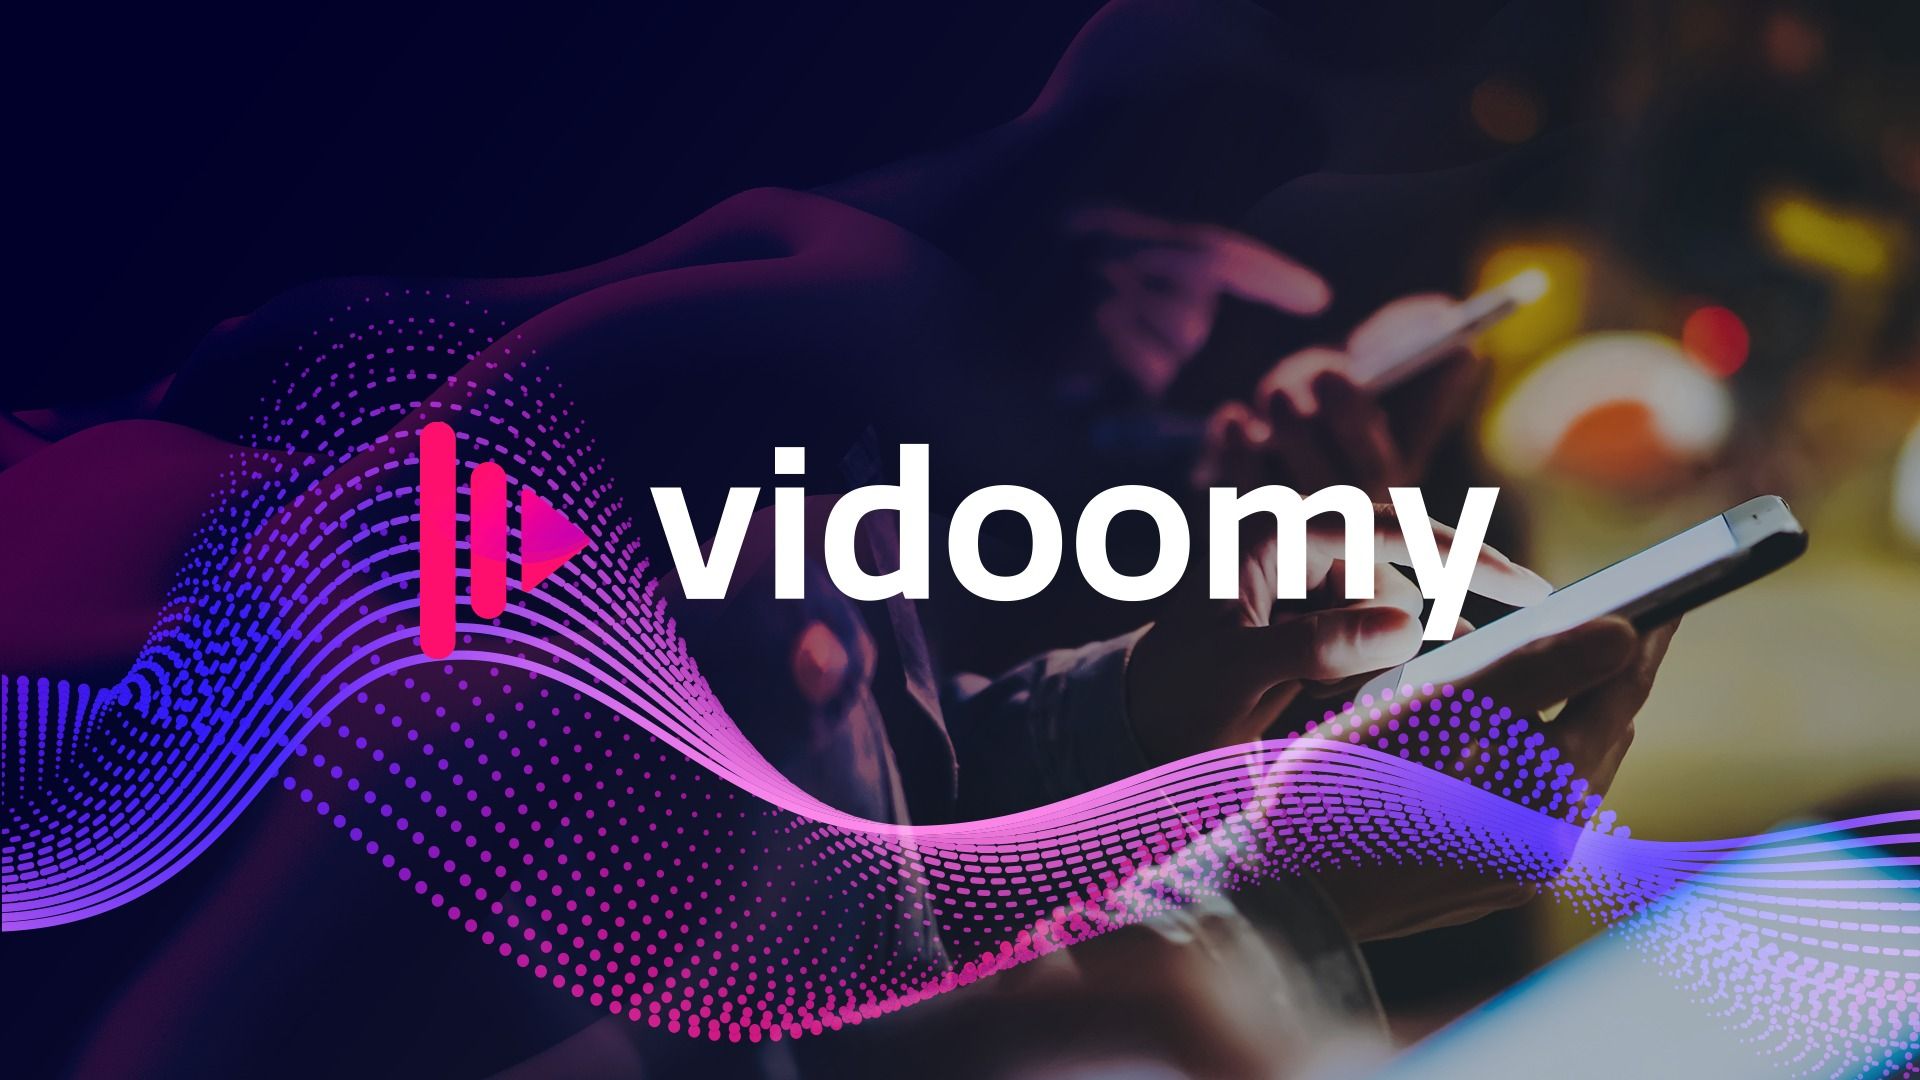 Vidoomy incluye evaluaciones y opiniones como parte de su algoritmo